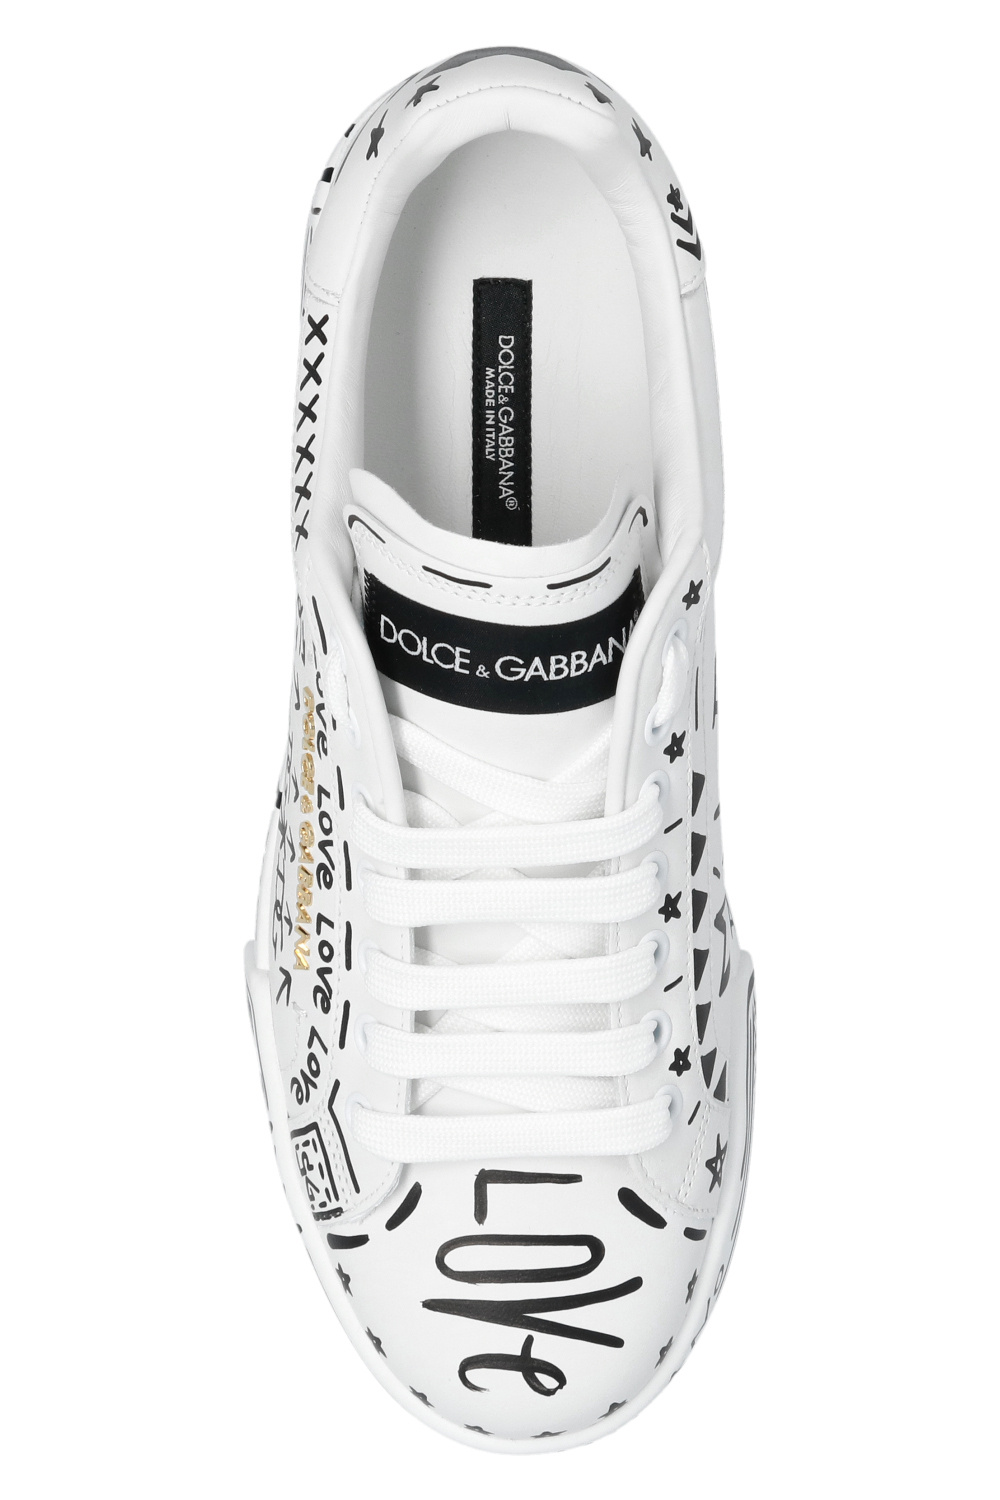 Dolce & Gabbana 'Portofino' sneakers | Women's Shoes | IetpShops